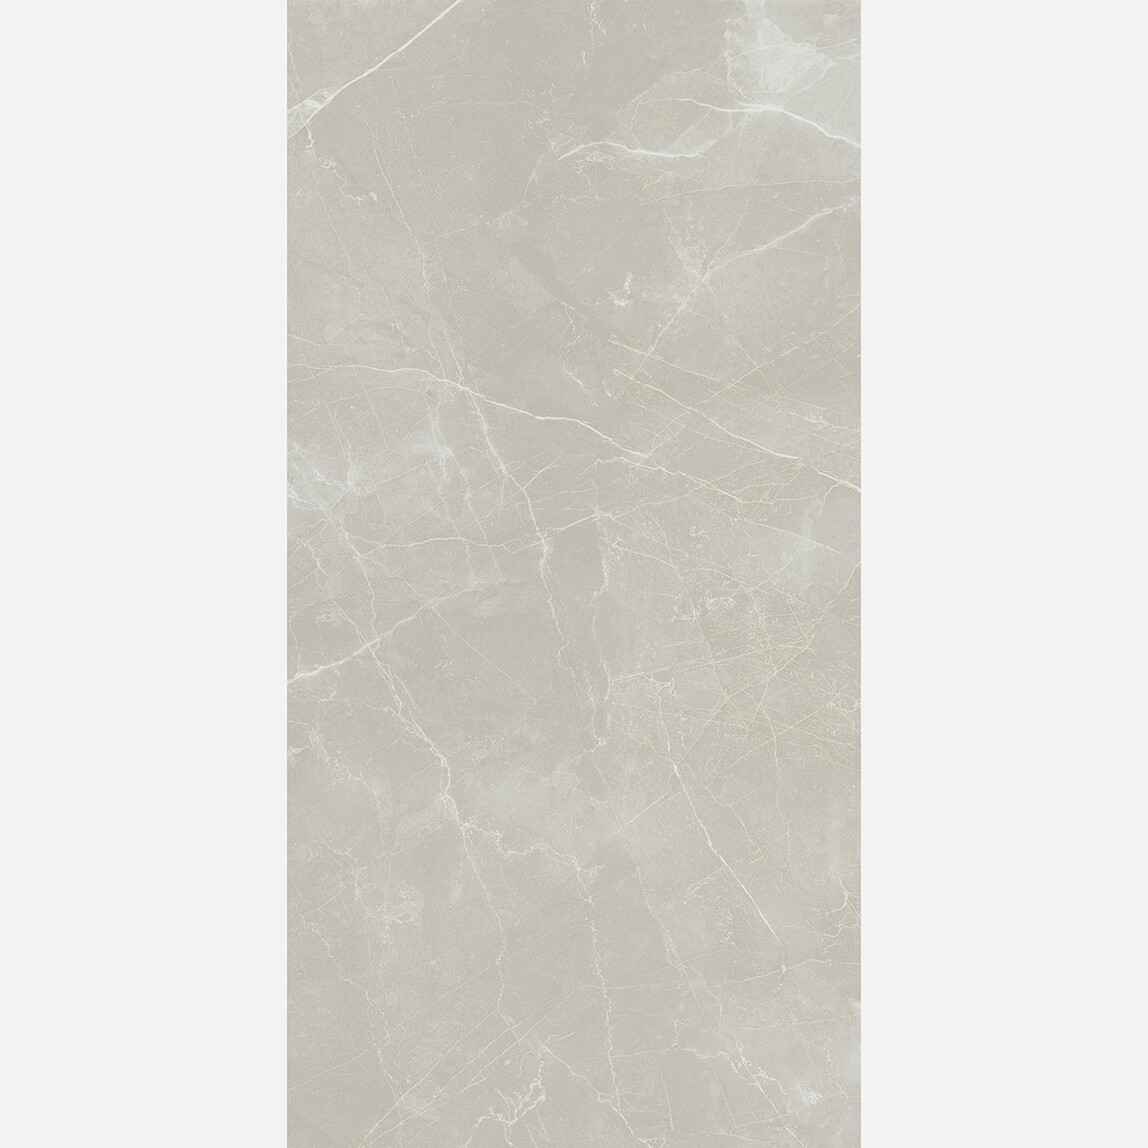    Yurtbay Sırlı Granit Maison Kemik 60x120cm 